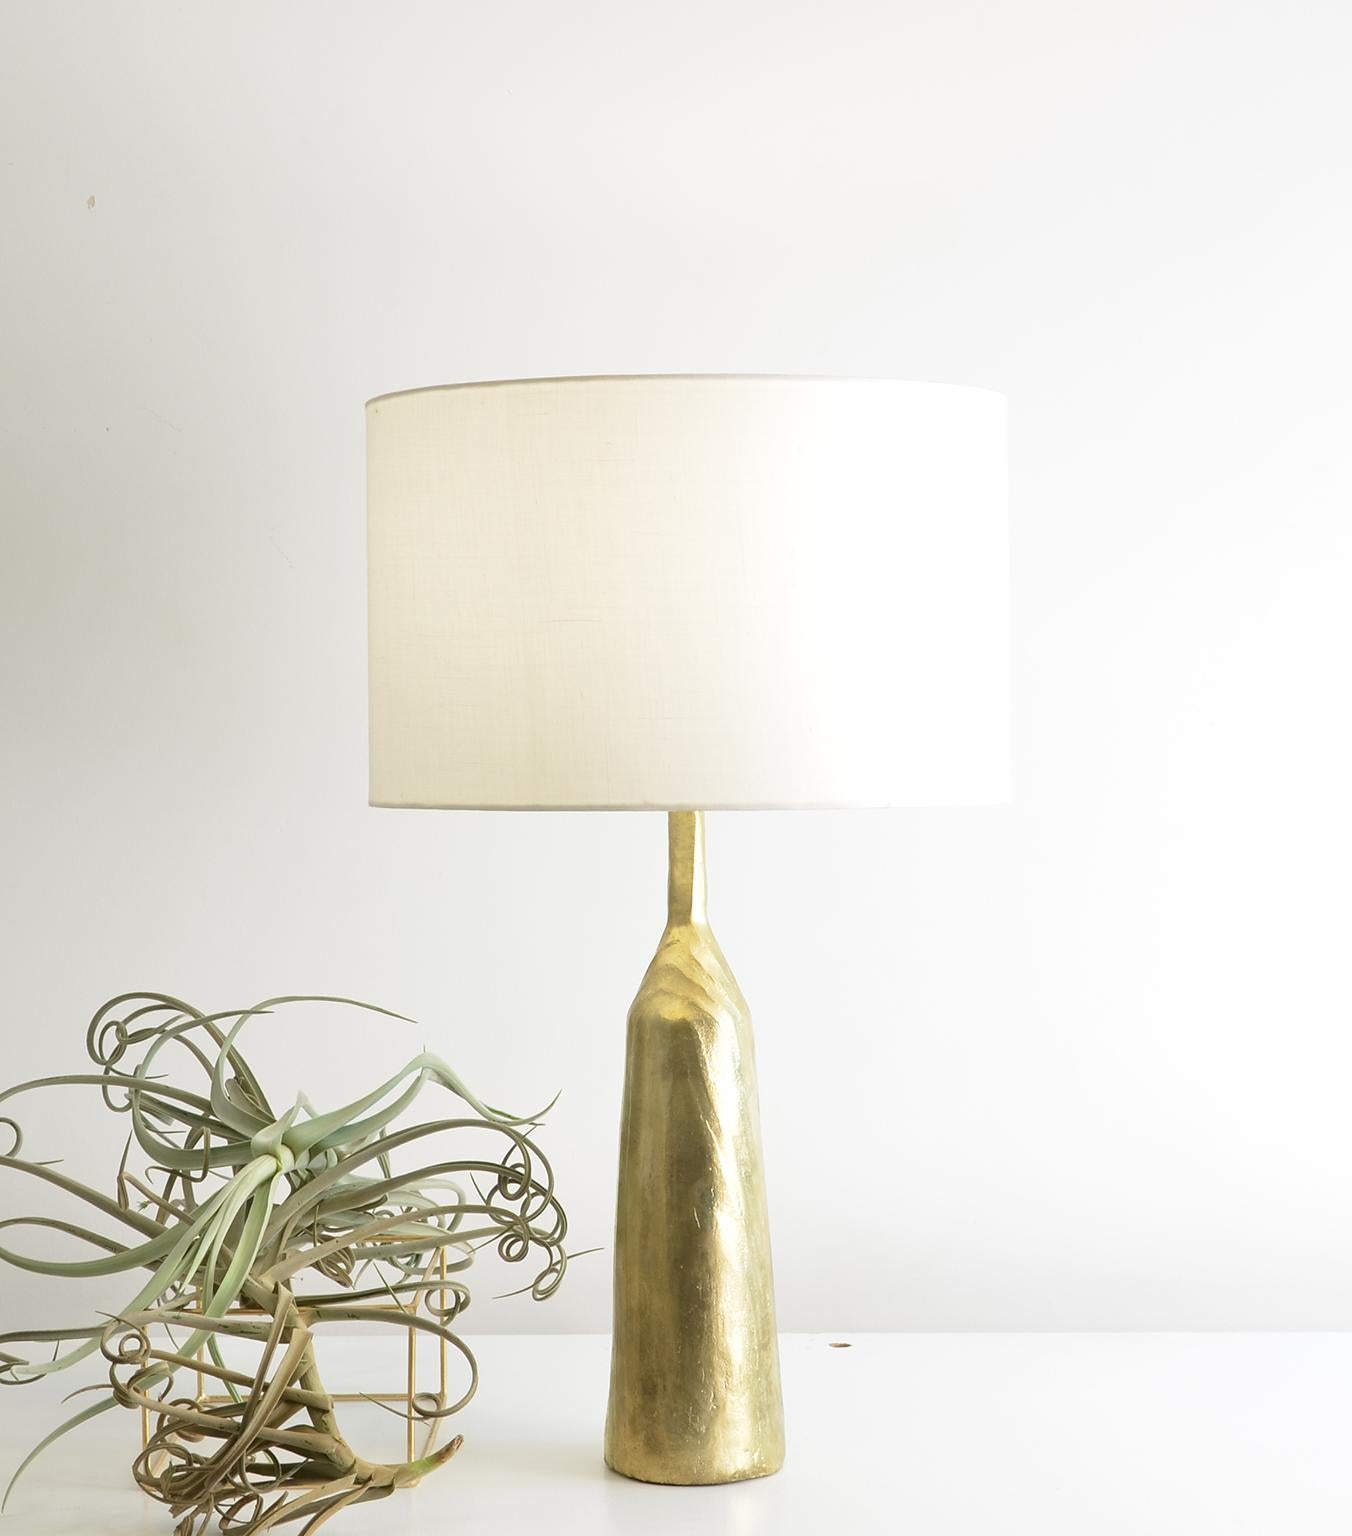 Lampe de table contemporaine minimaliste Morandi.
Lampe de table en bronze moulé.
La maquette de la fonderie a été réalisée en bois carbonisé afin d'obtenir l'effet de texture souhaité. 
Le design de cette lampe a été inspiré par l'artiste italien